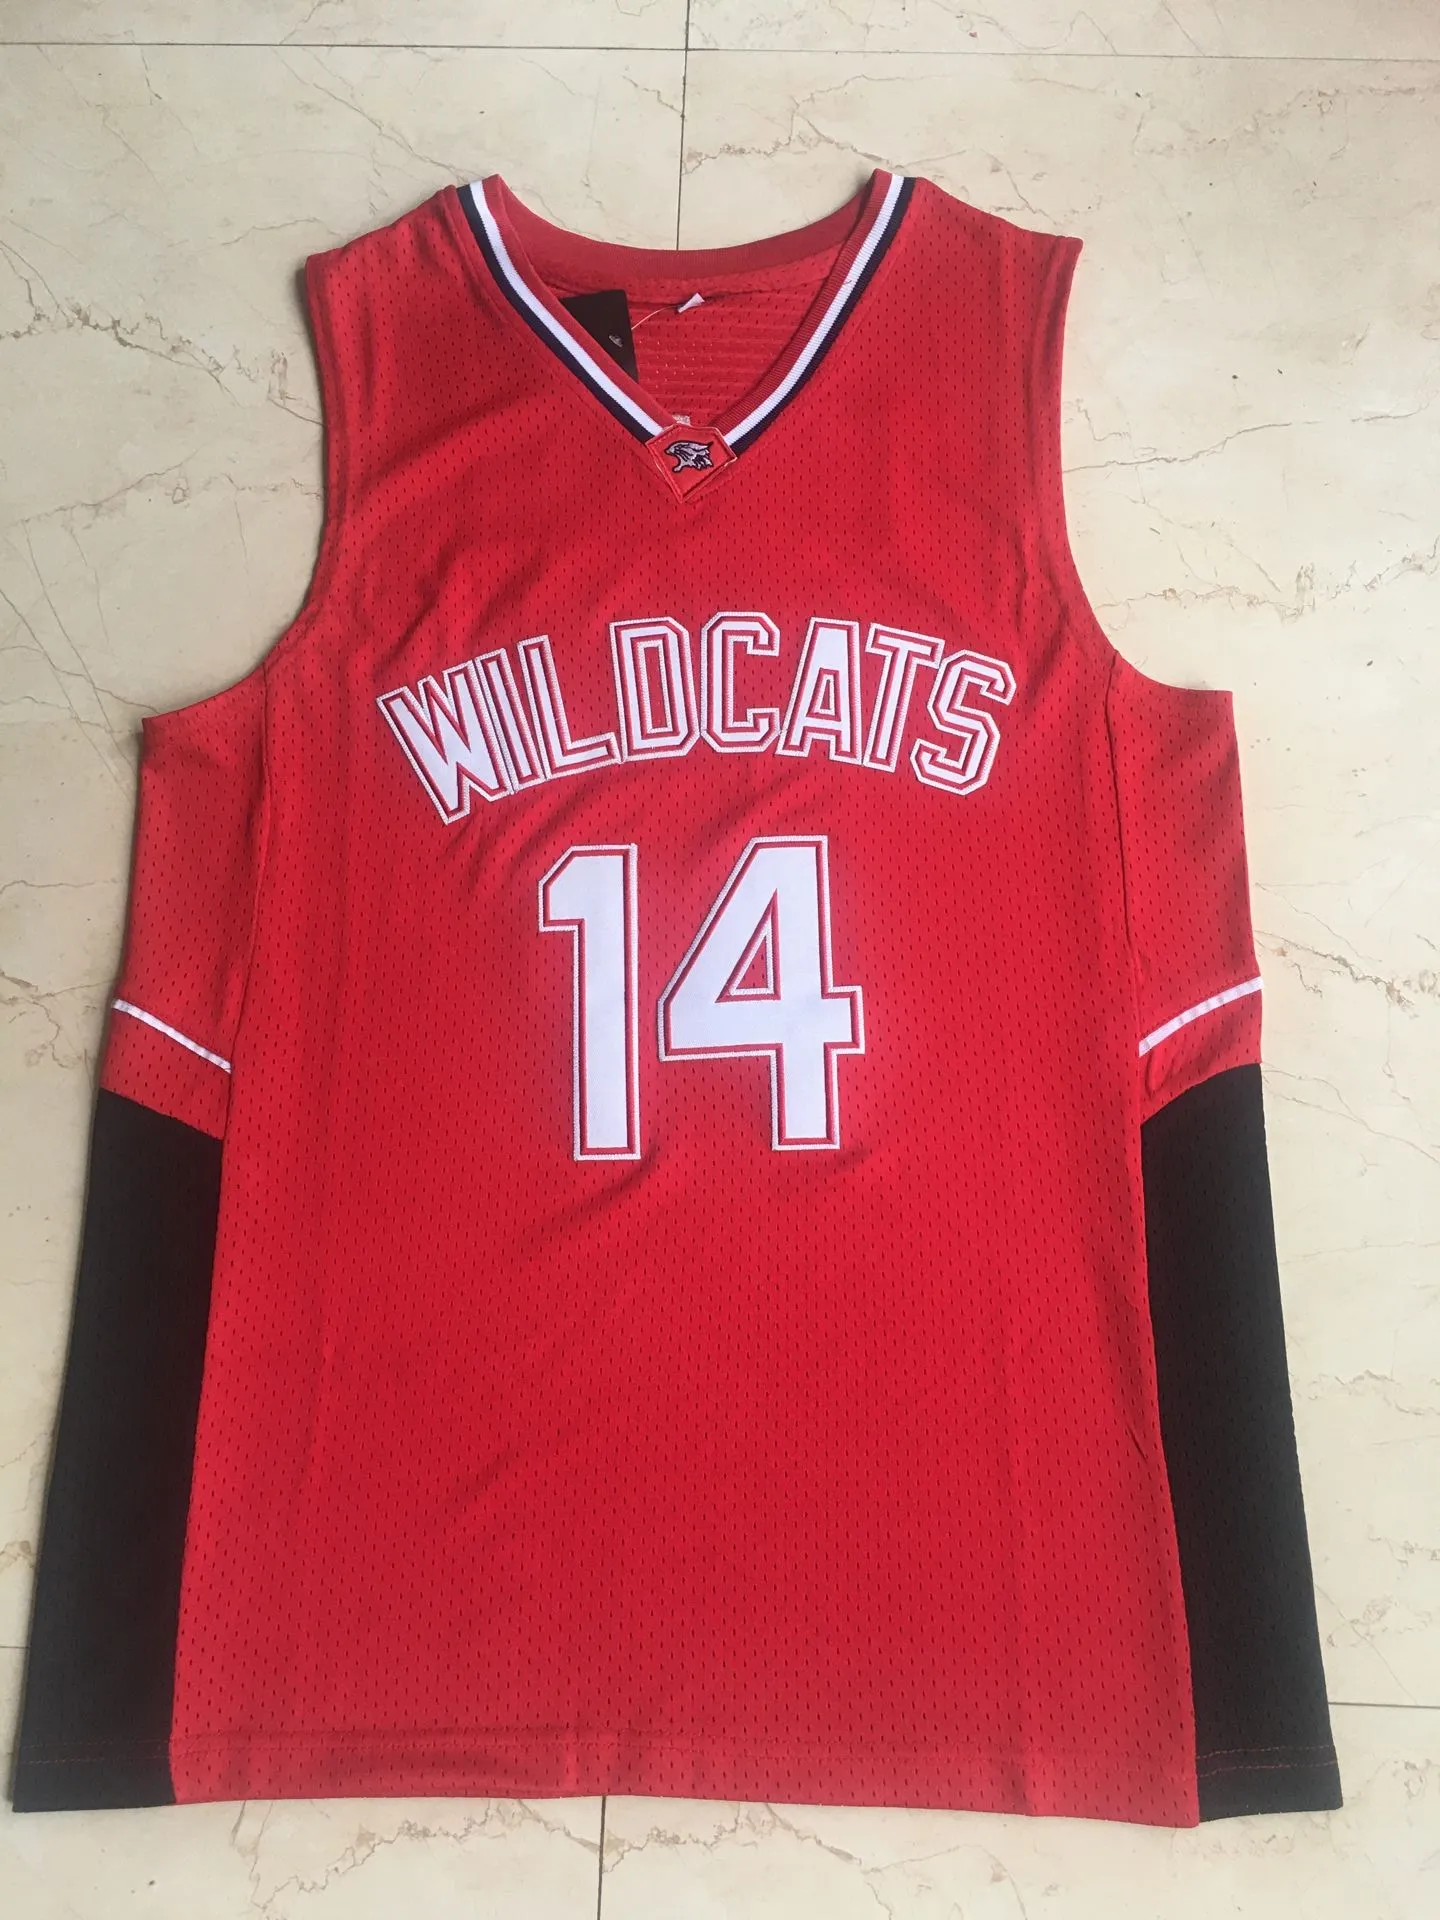 

14 Zac Efron Troy Bolton East старшая школа дикие кошки красные Ретро баскетбольные Джерси мужские сшитые Джерси Спортивная рубашка